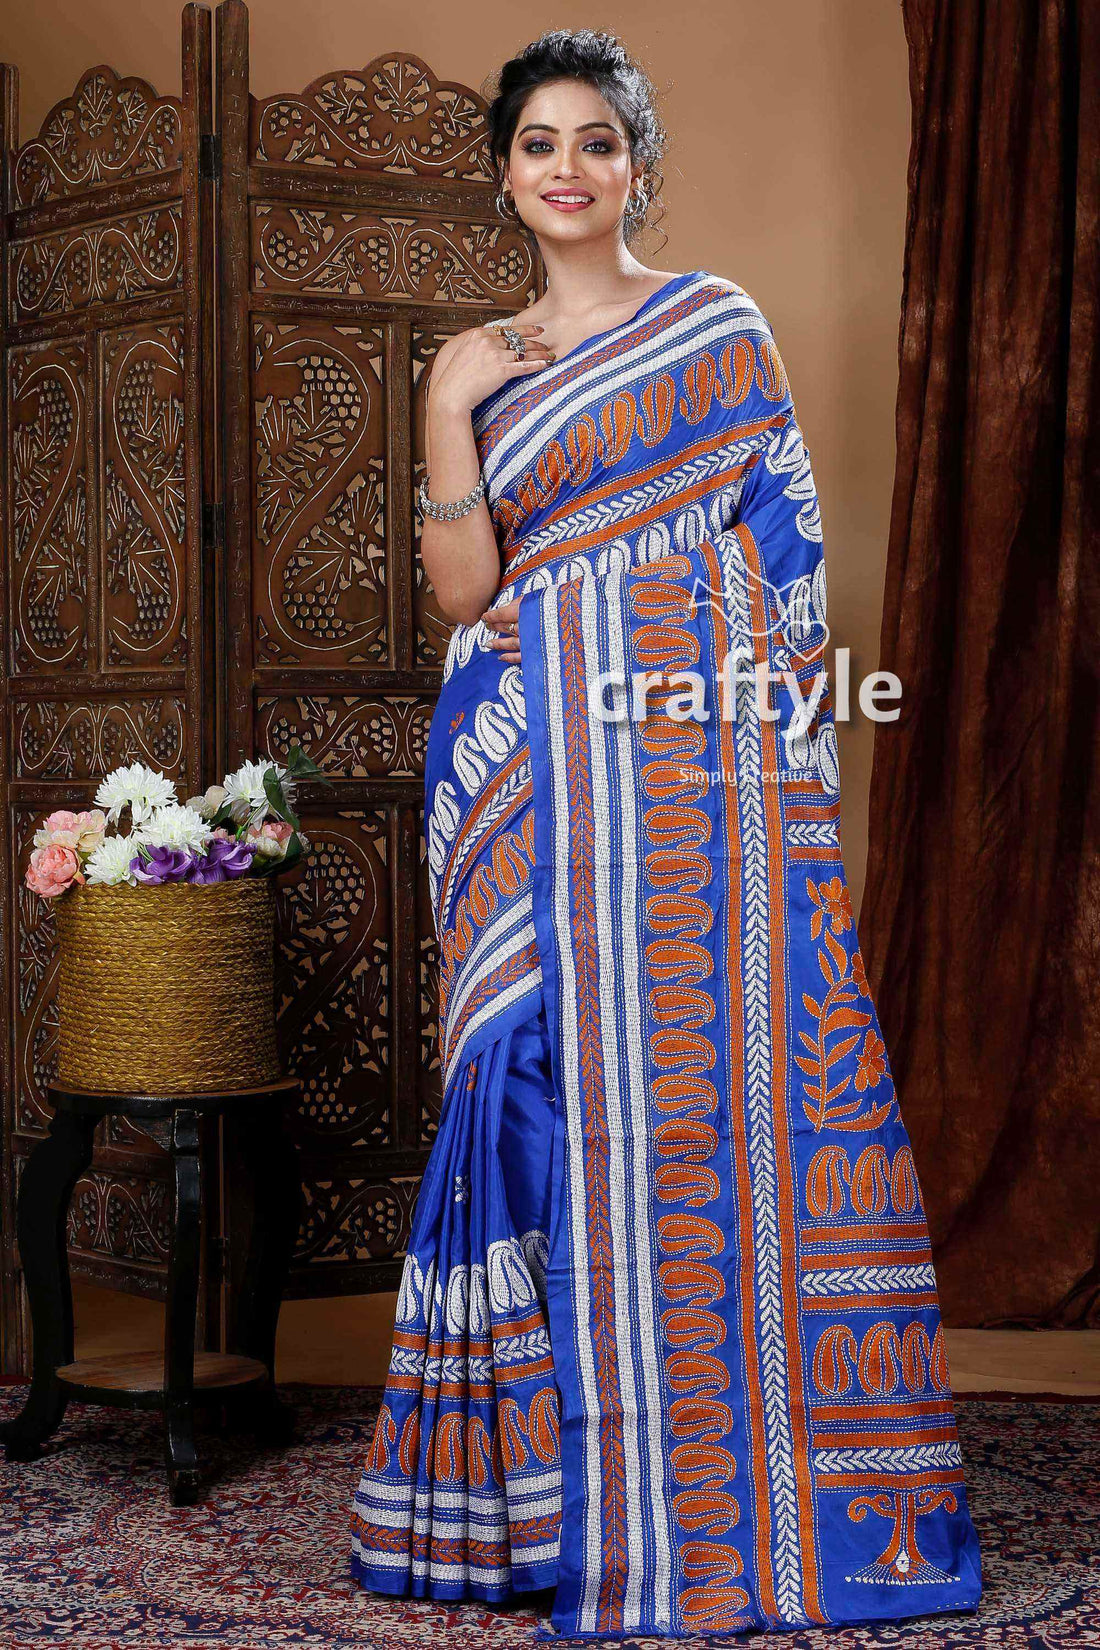 Azure Blue Exquisite Kantha Stitch Saree-Craftyle